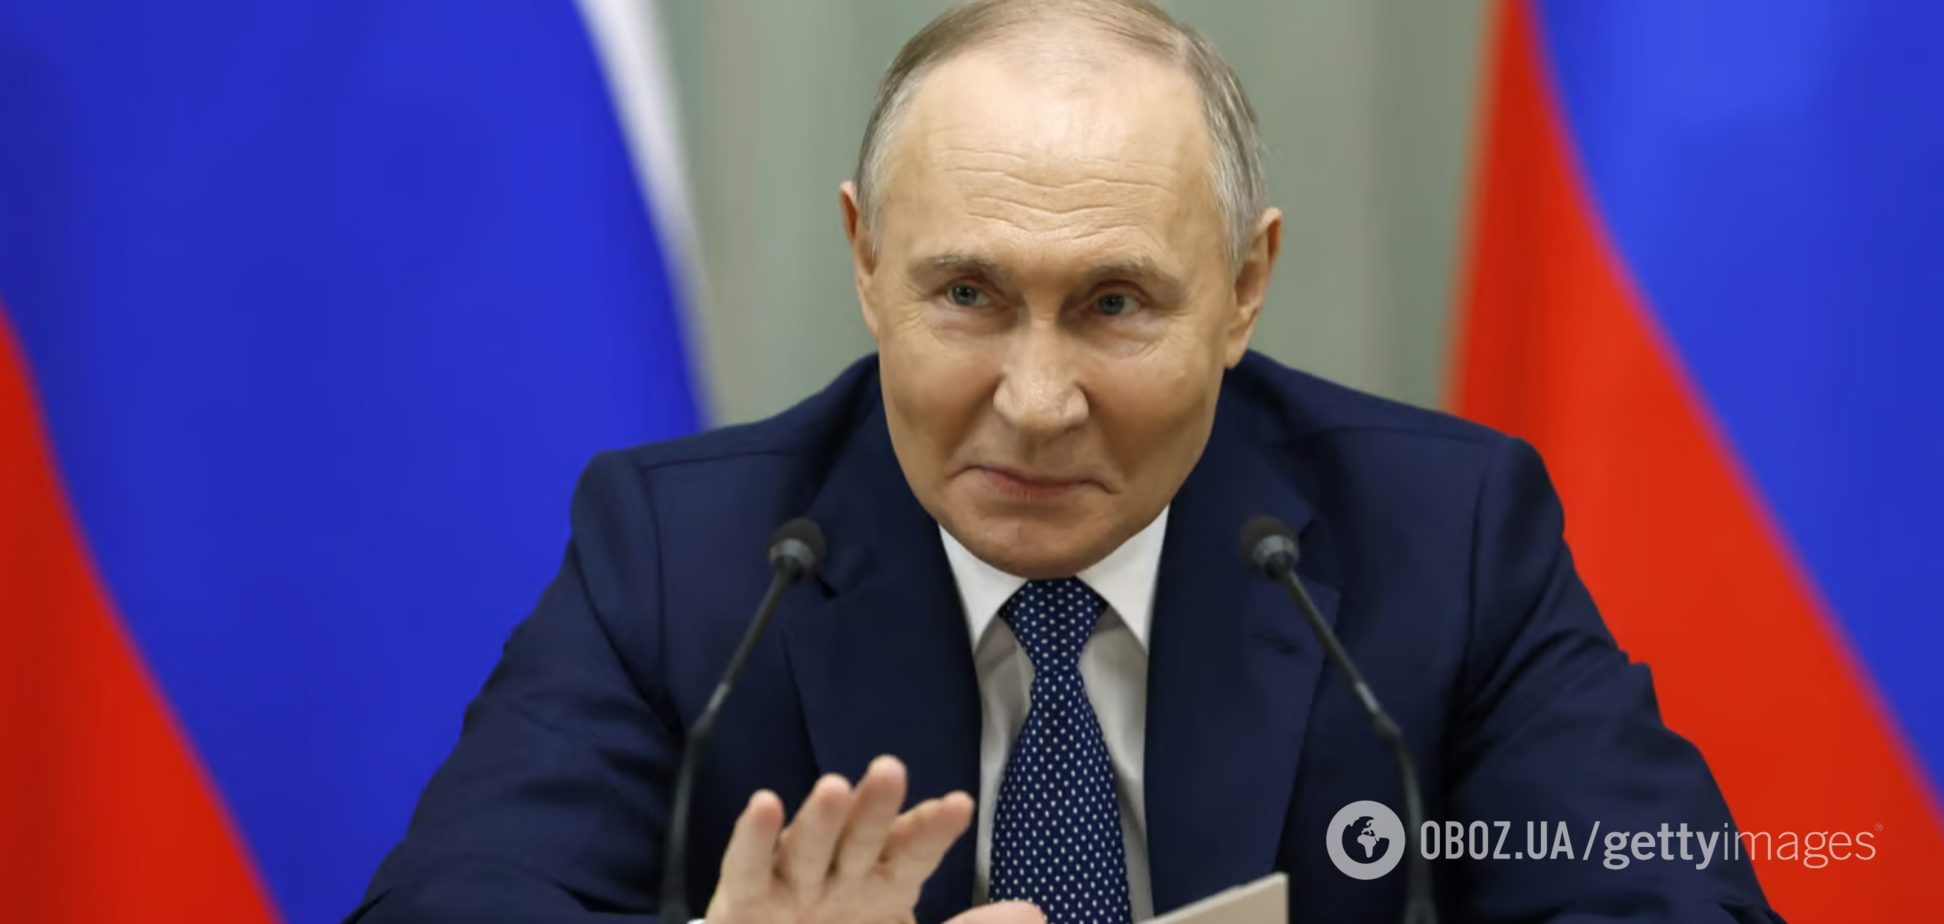 'Цирк' с 'инаугурацией' Путина: каких гостей ждут в Кремле и какие 'перестановки' в России возможны